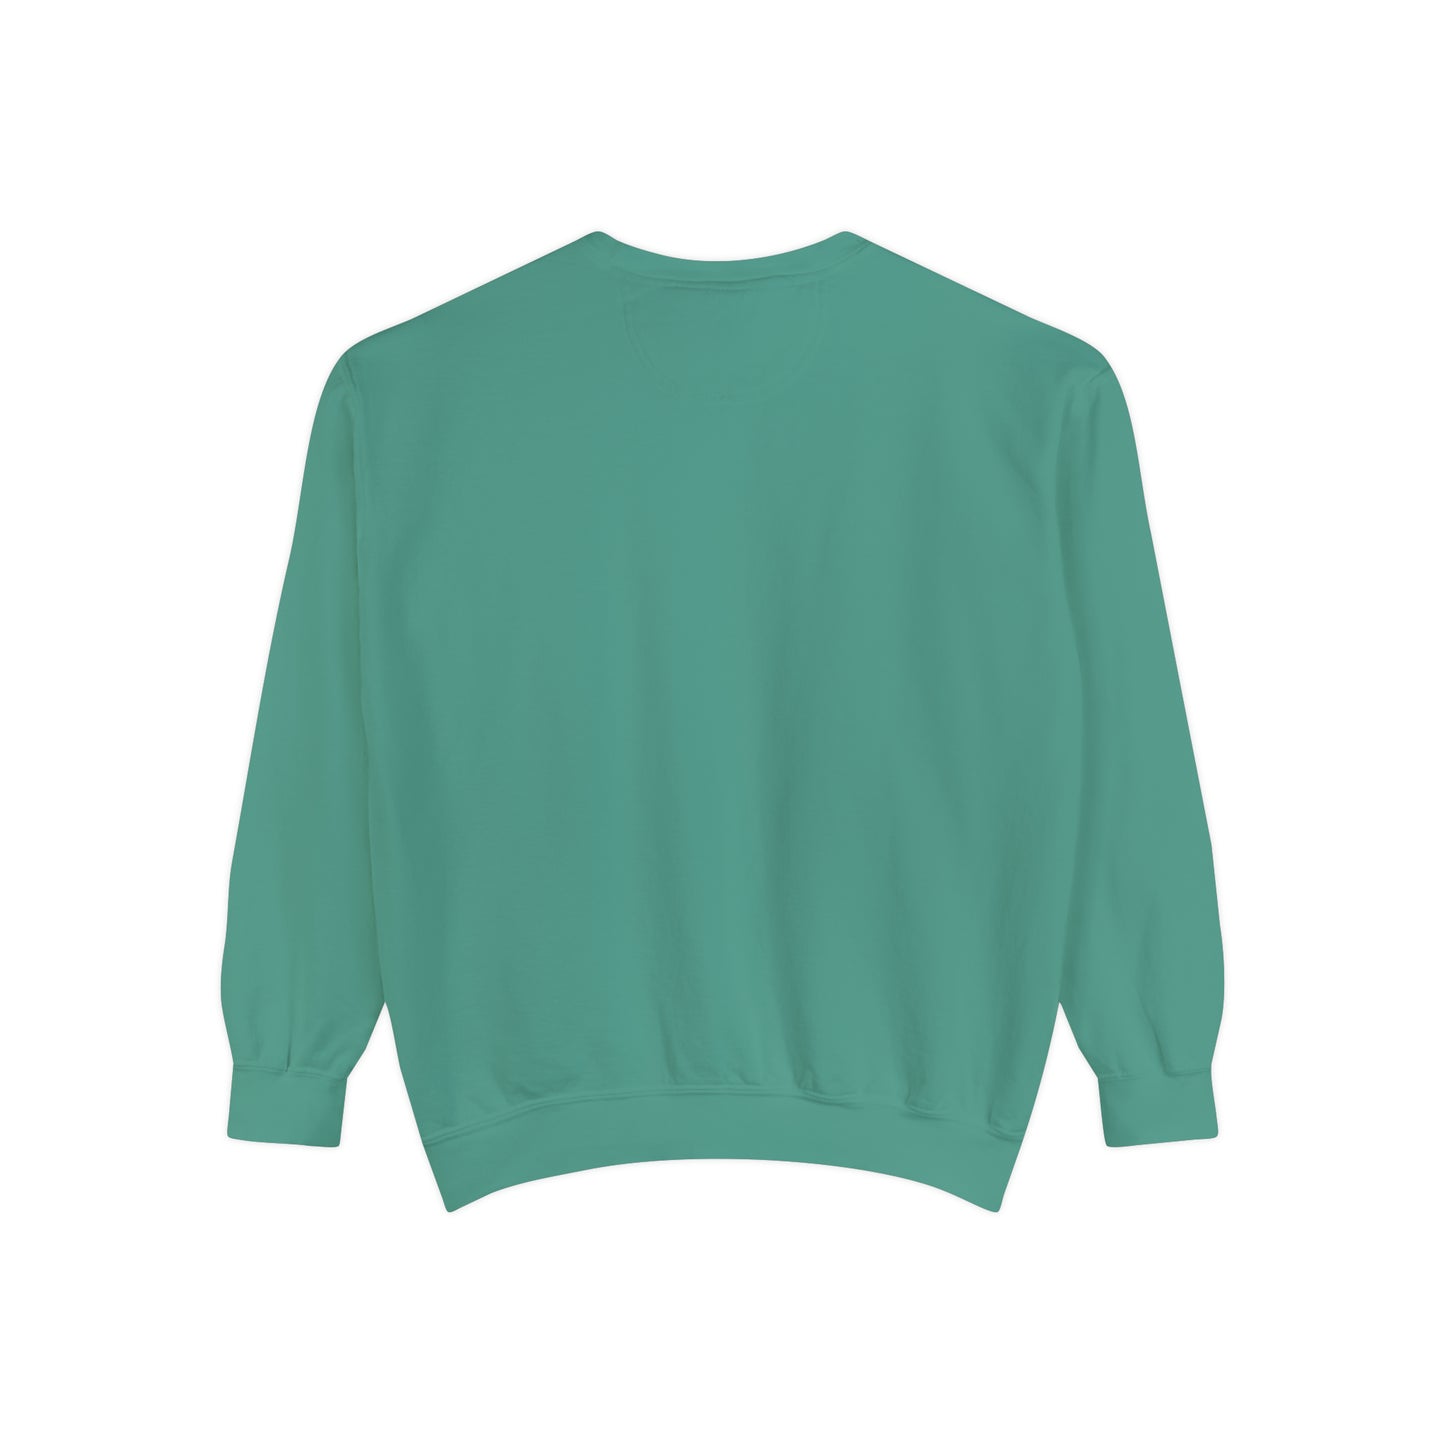 MERRY CHRISTMAS SWEATSHIRT Unisex Garment-Dyed Sweatshirt